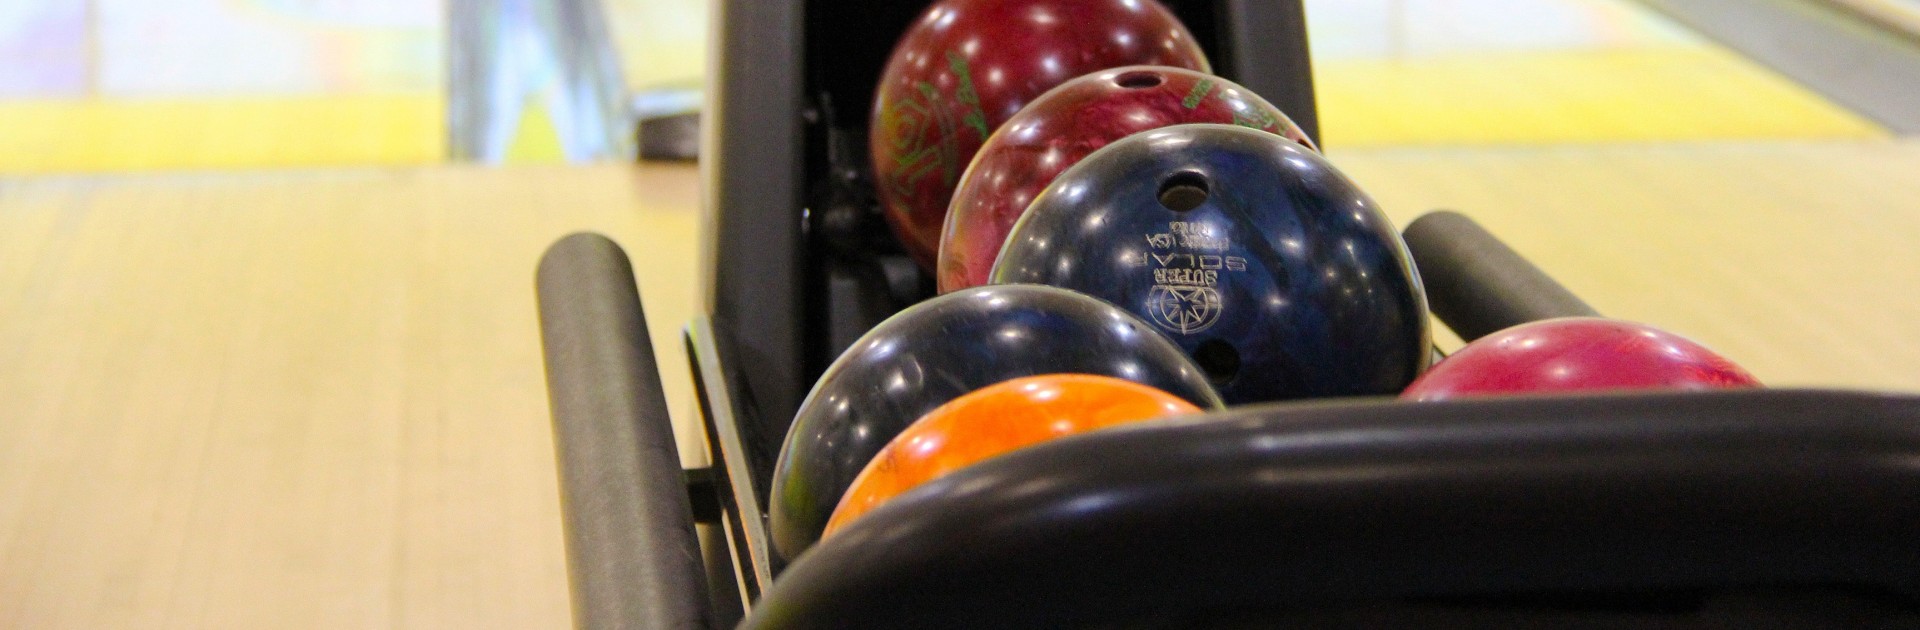 Bowling Kugeln - © Sharonang/pixabay.com